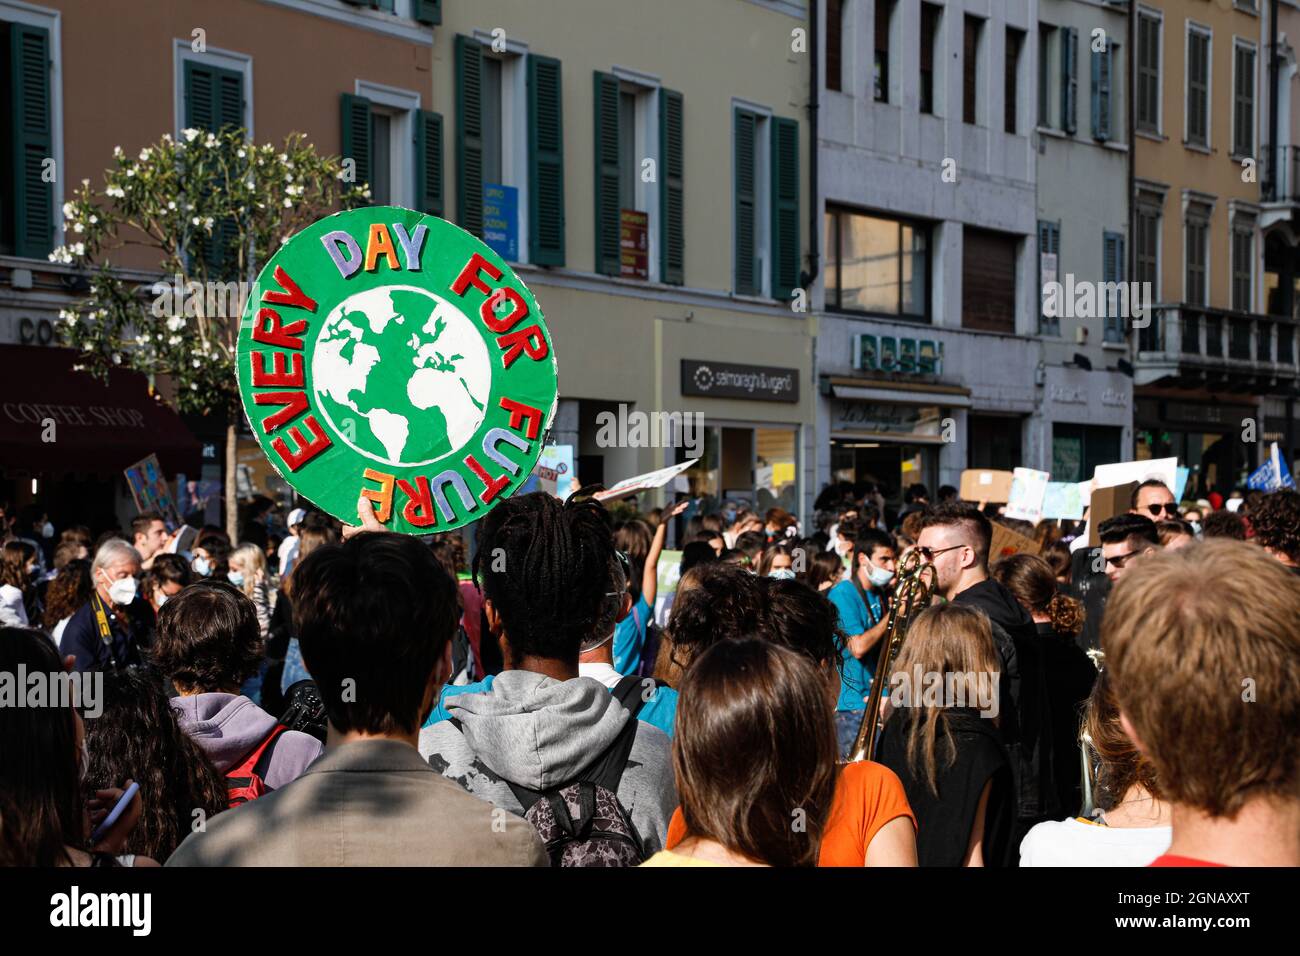 2021. September, Brescia, Italien. Freitag für die zukünftige Bewegung. Kundgebung der Studenten auf dem Platz. Jeden Tag für die Zukunft Kredit: Marco Ciccolella/Alamy Live News Stockfoto